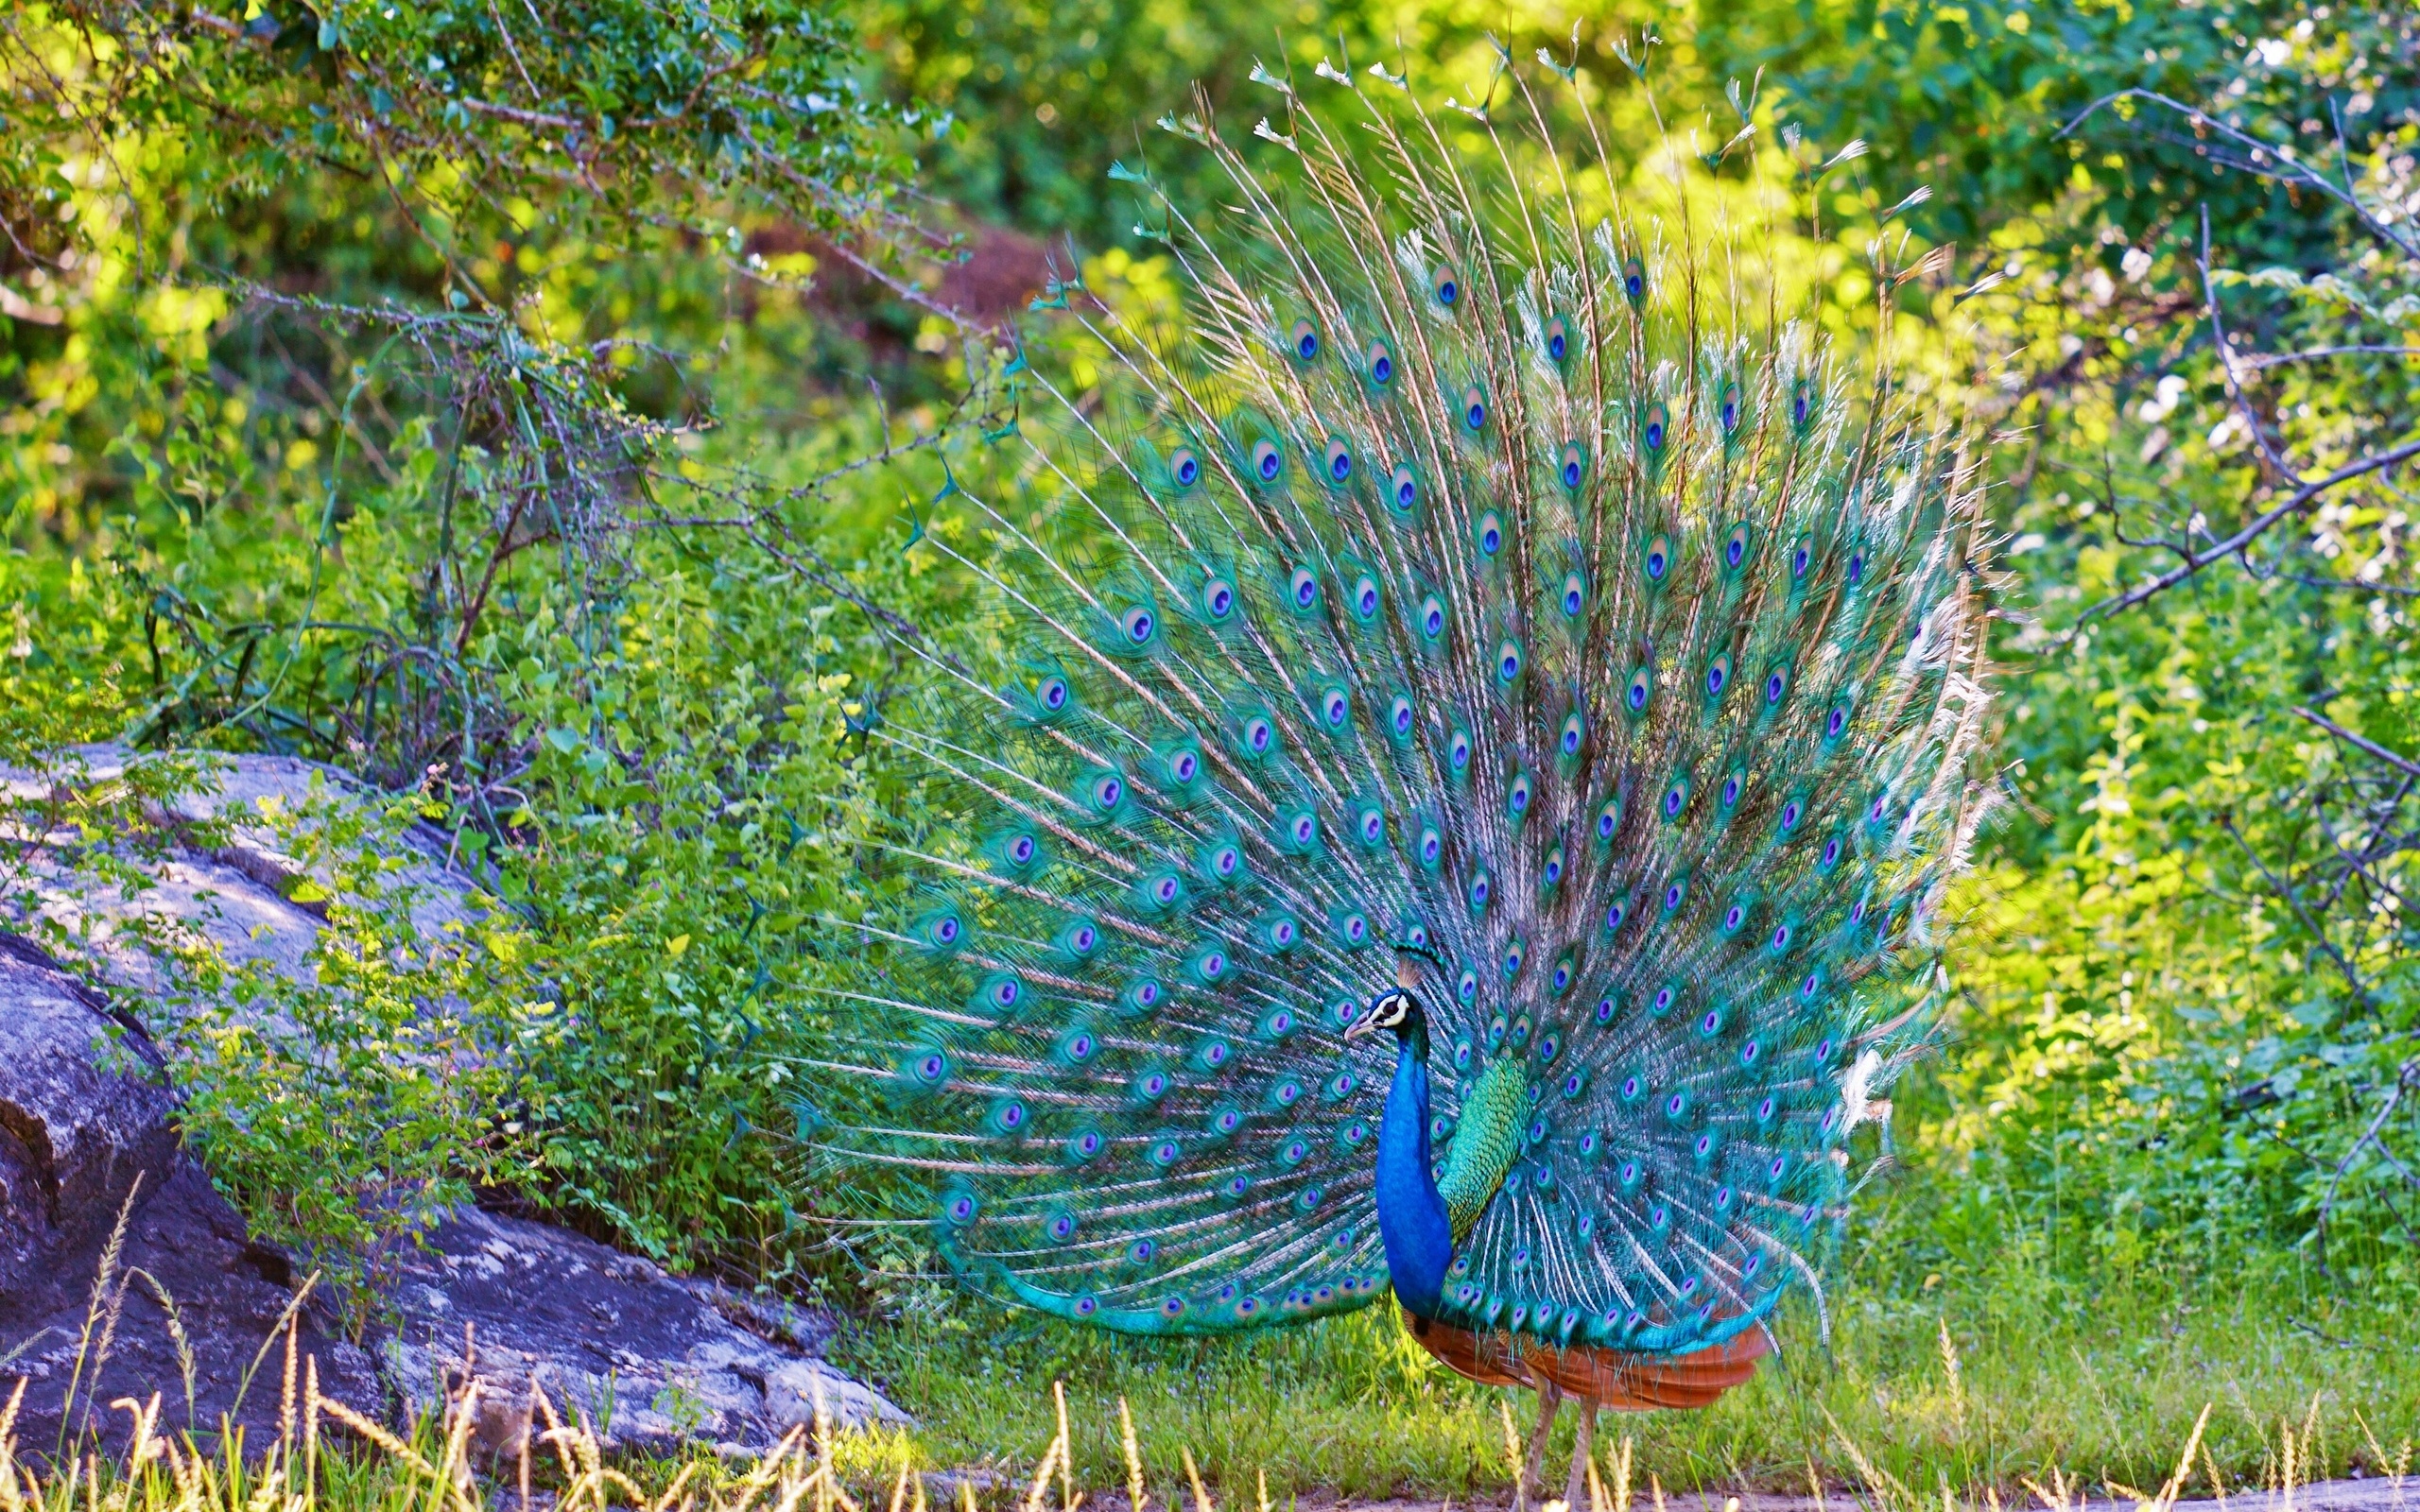 Peacock Bird Widescreen Wallpaper Wallpaperlepi